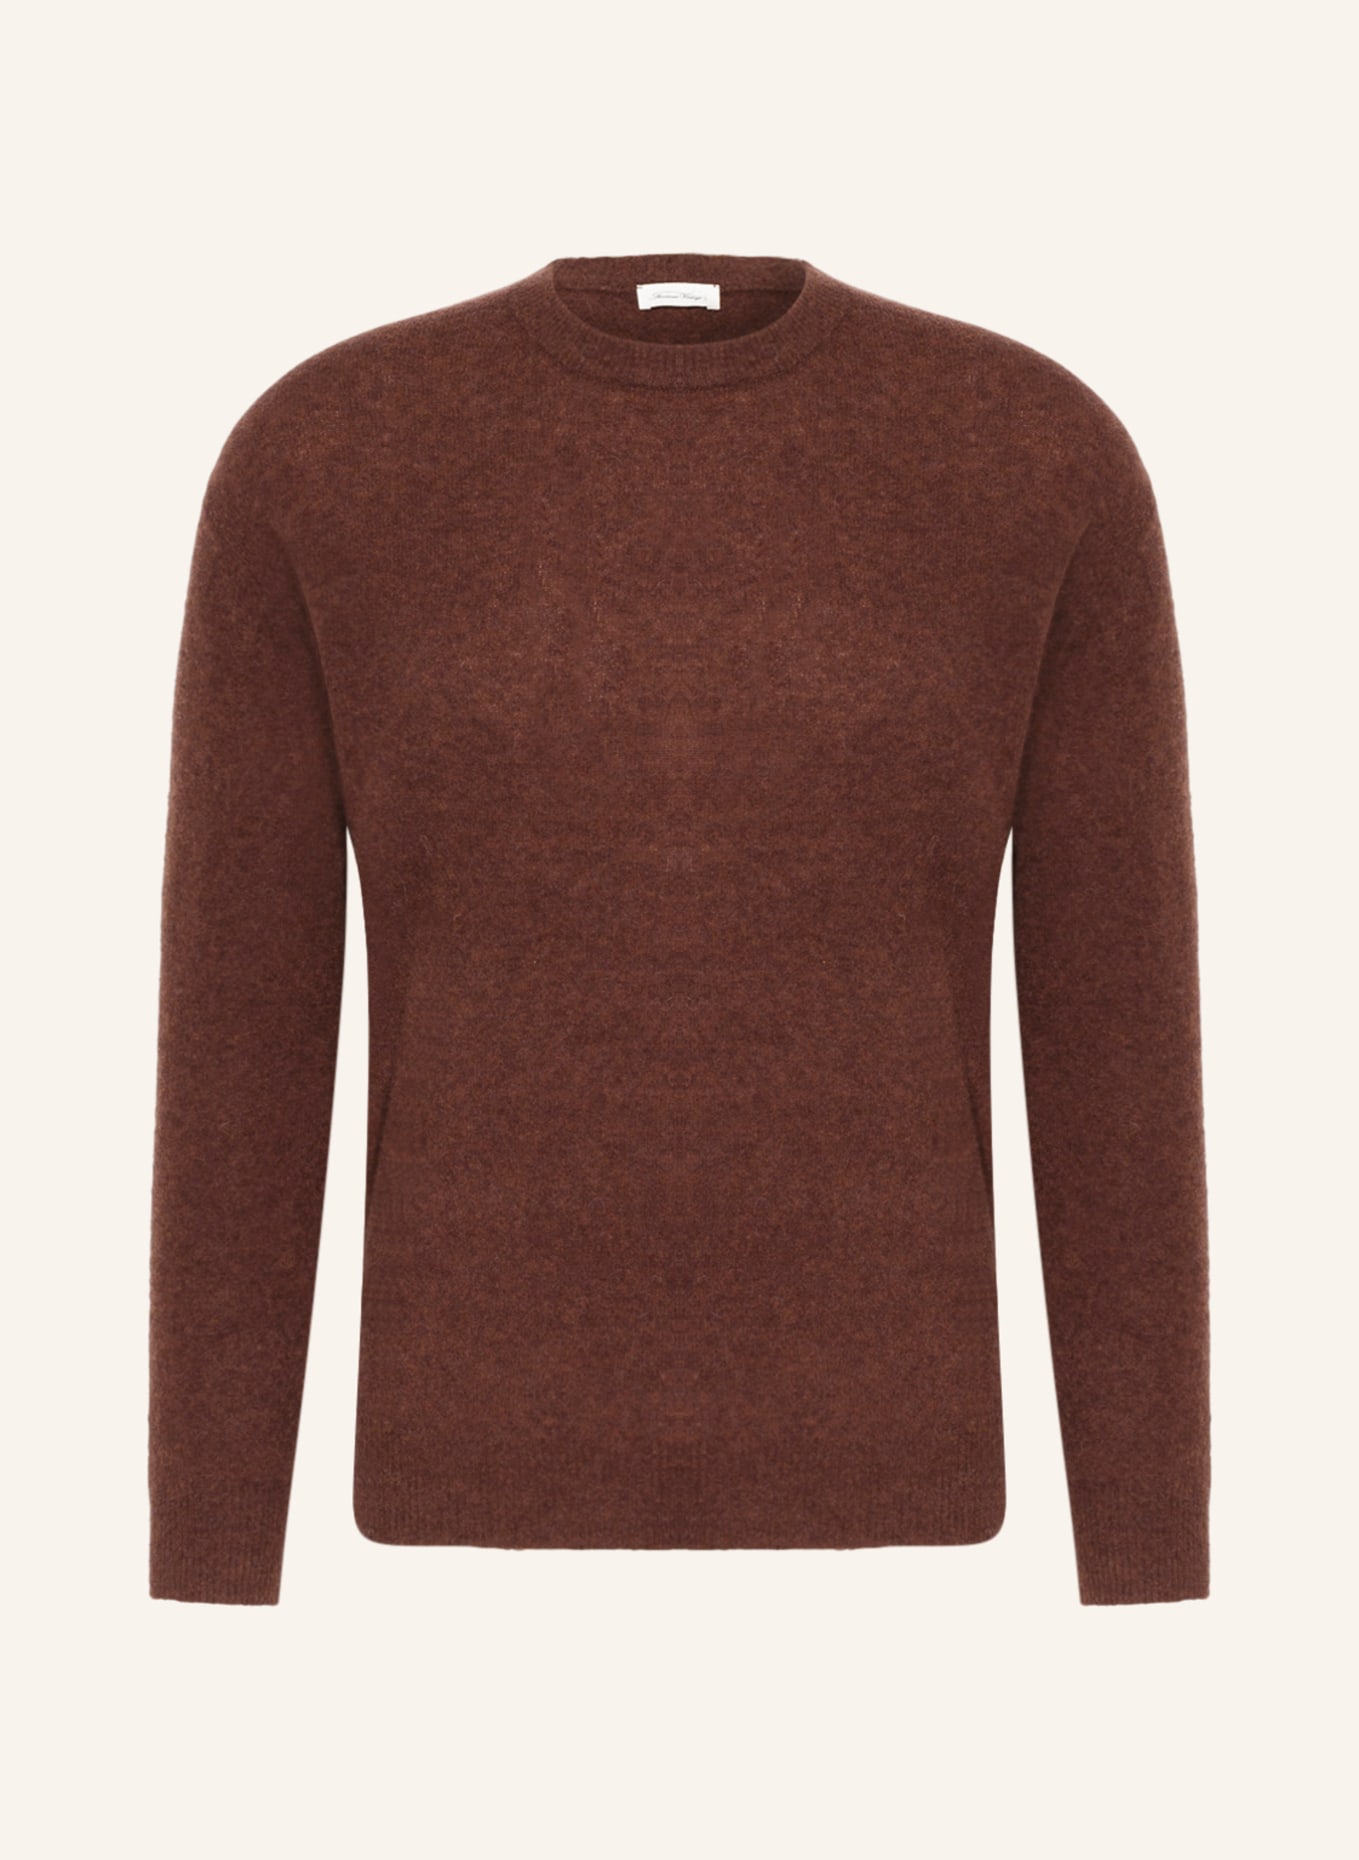 American Vintage Sweater, Color: DARK BROWN (Image 1)